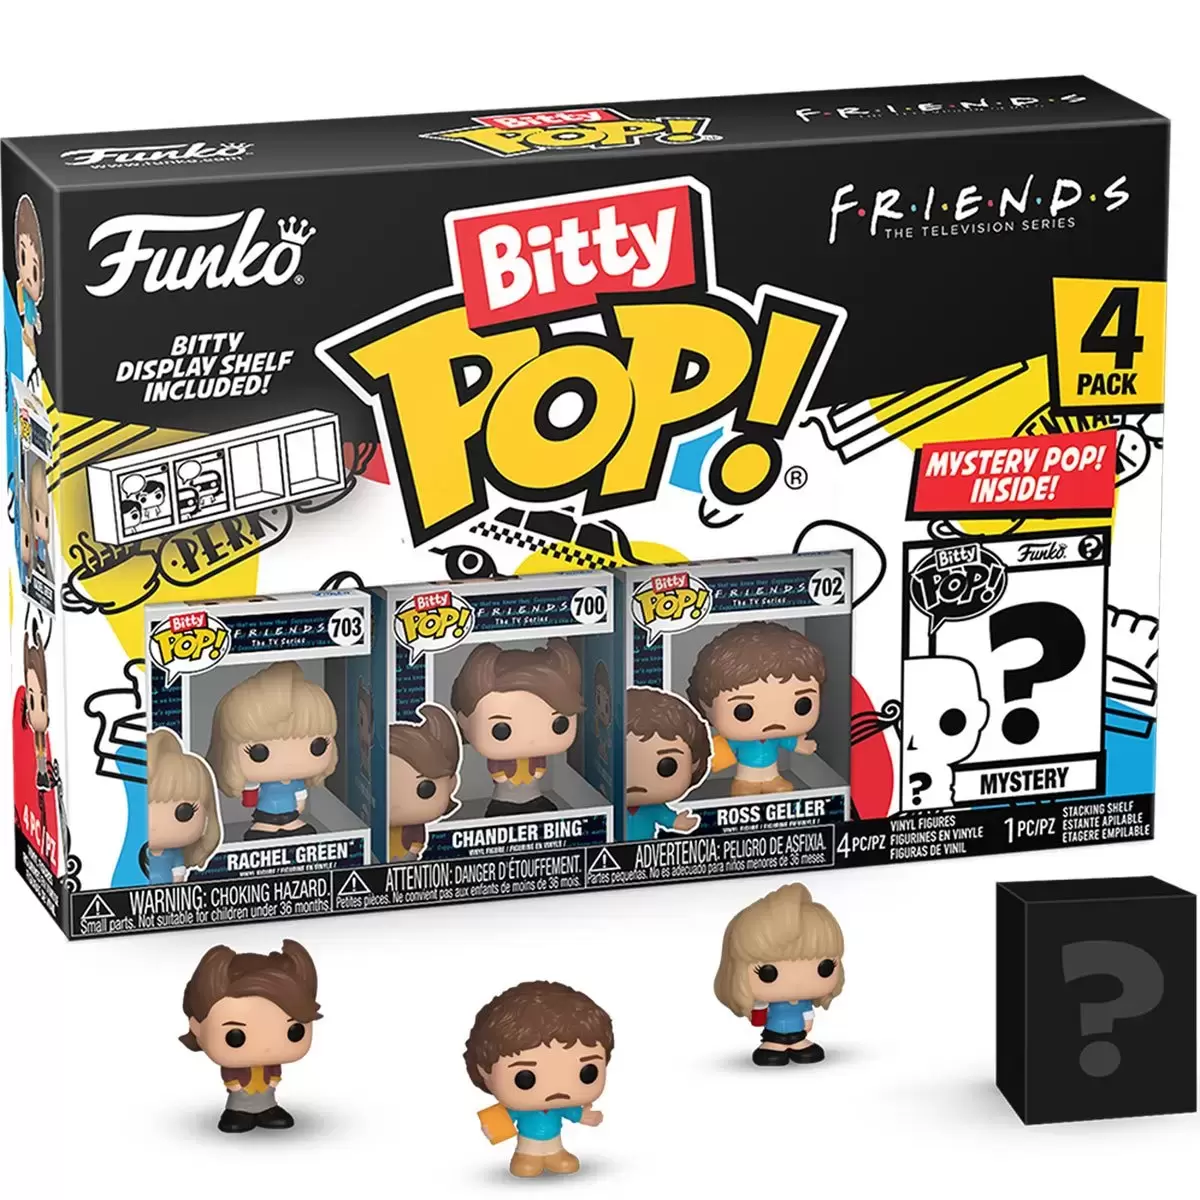 Bitty POP! - Friends - Rachel Green,  Chandler Bing, Ross Geller & Mystery